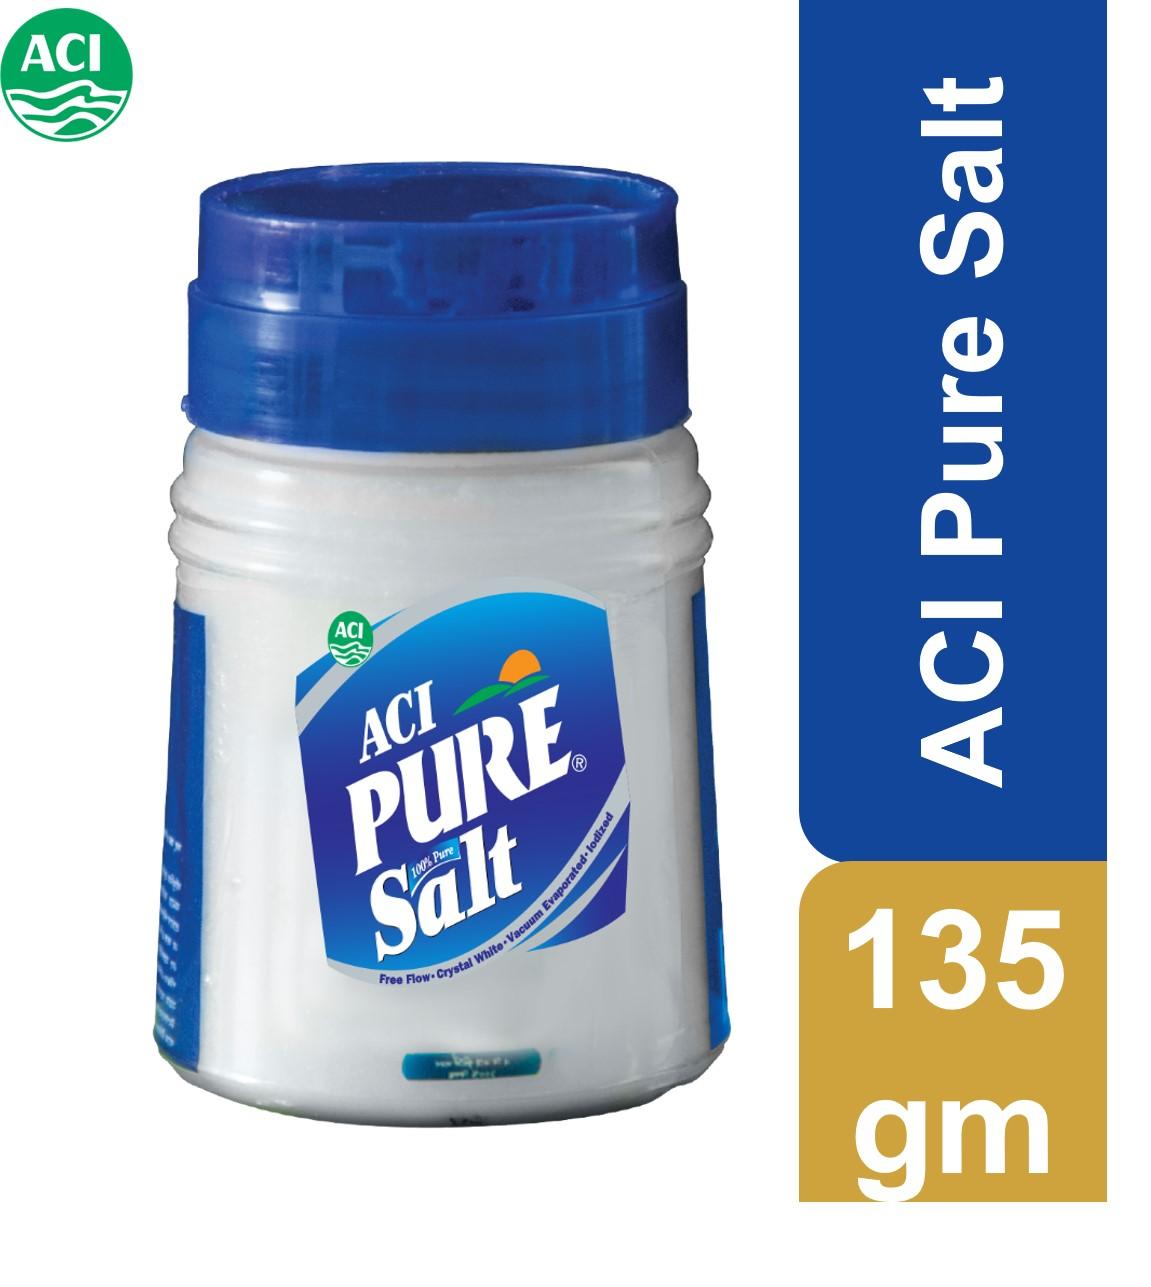 ACI PURE Salt 135 gm